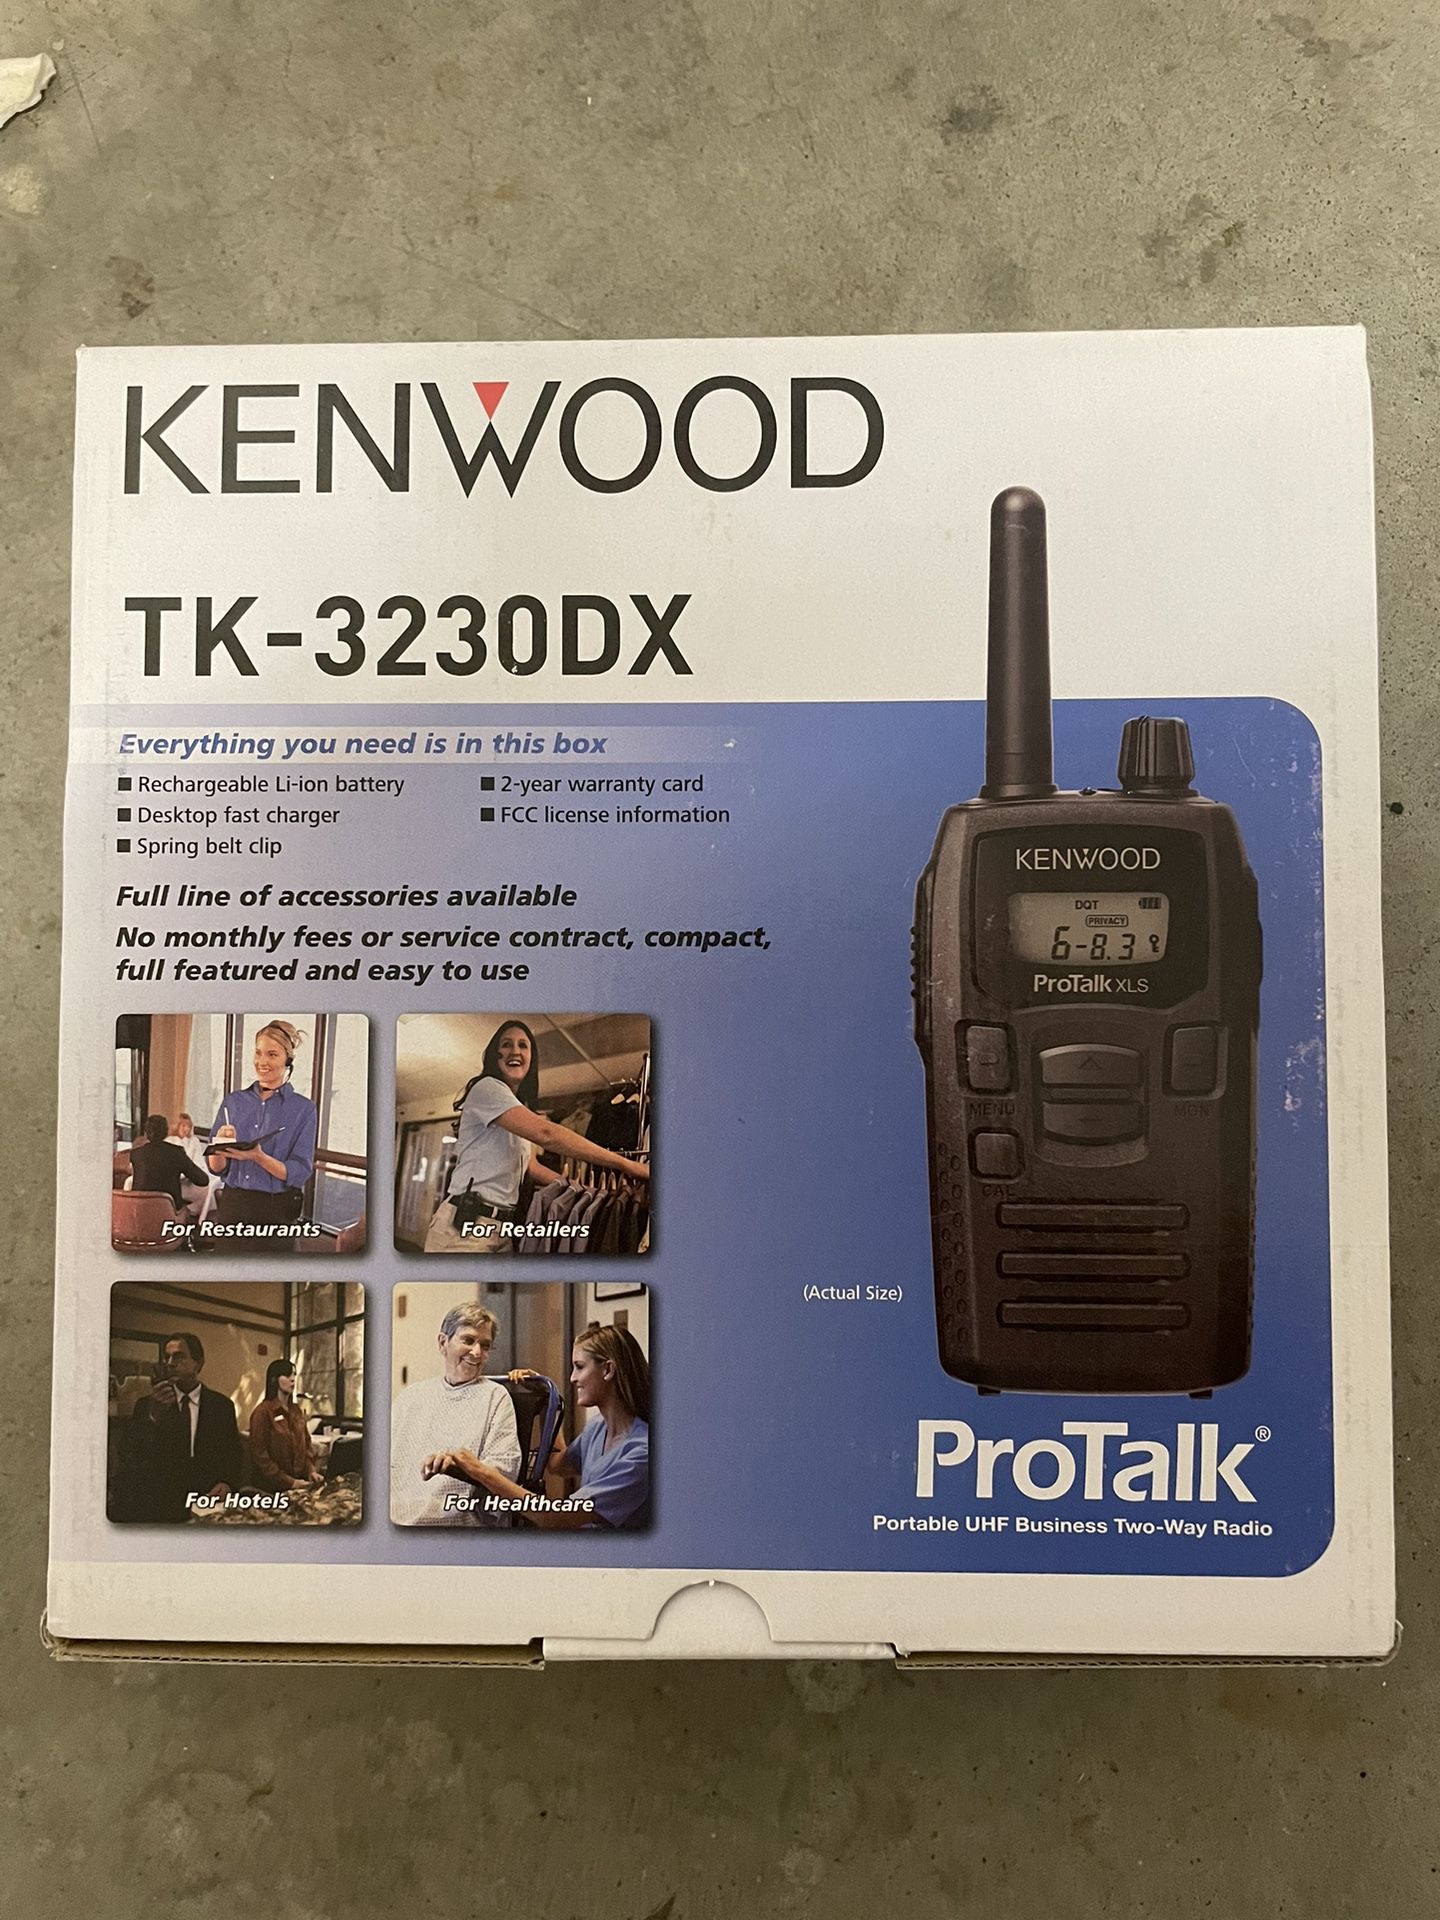 Kenwood TK-3230DX 